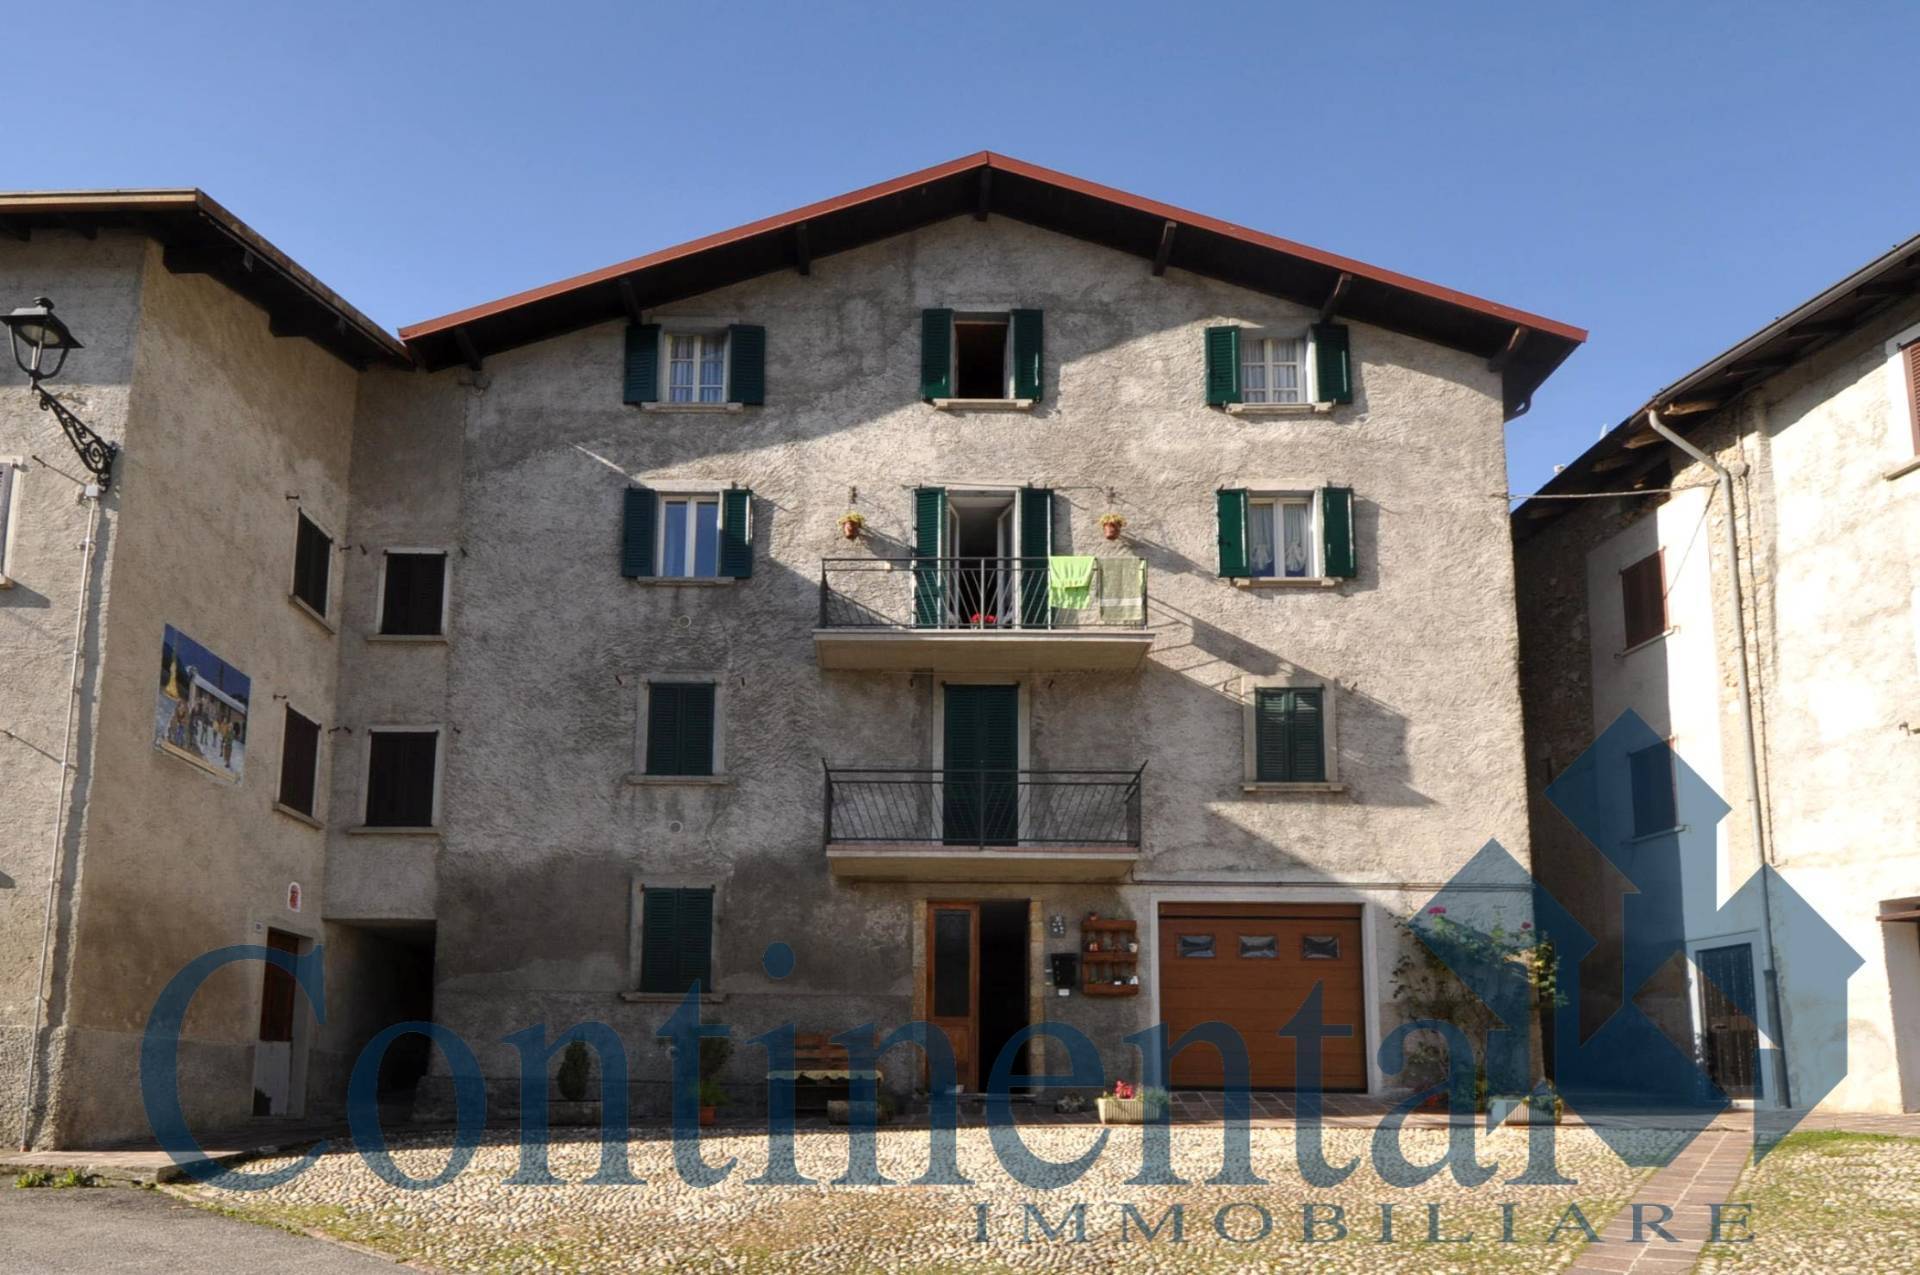 Appartamento in vendita a Santa Brigida, 4 locali, prezzo € 56.900 | PortaleAgenzieImmobiliari.it